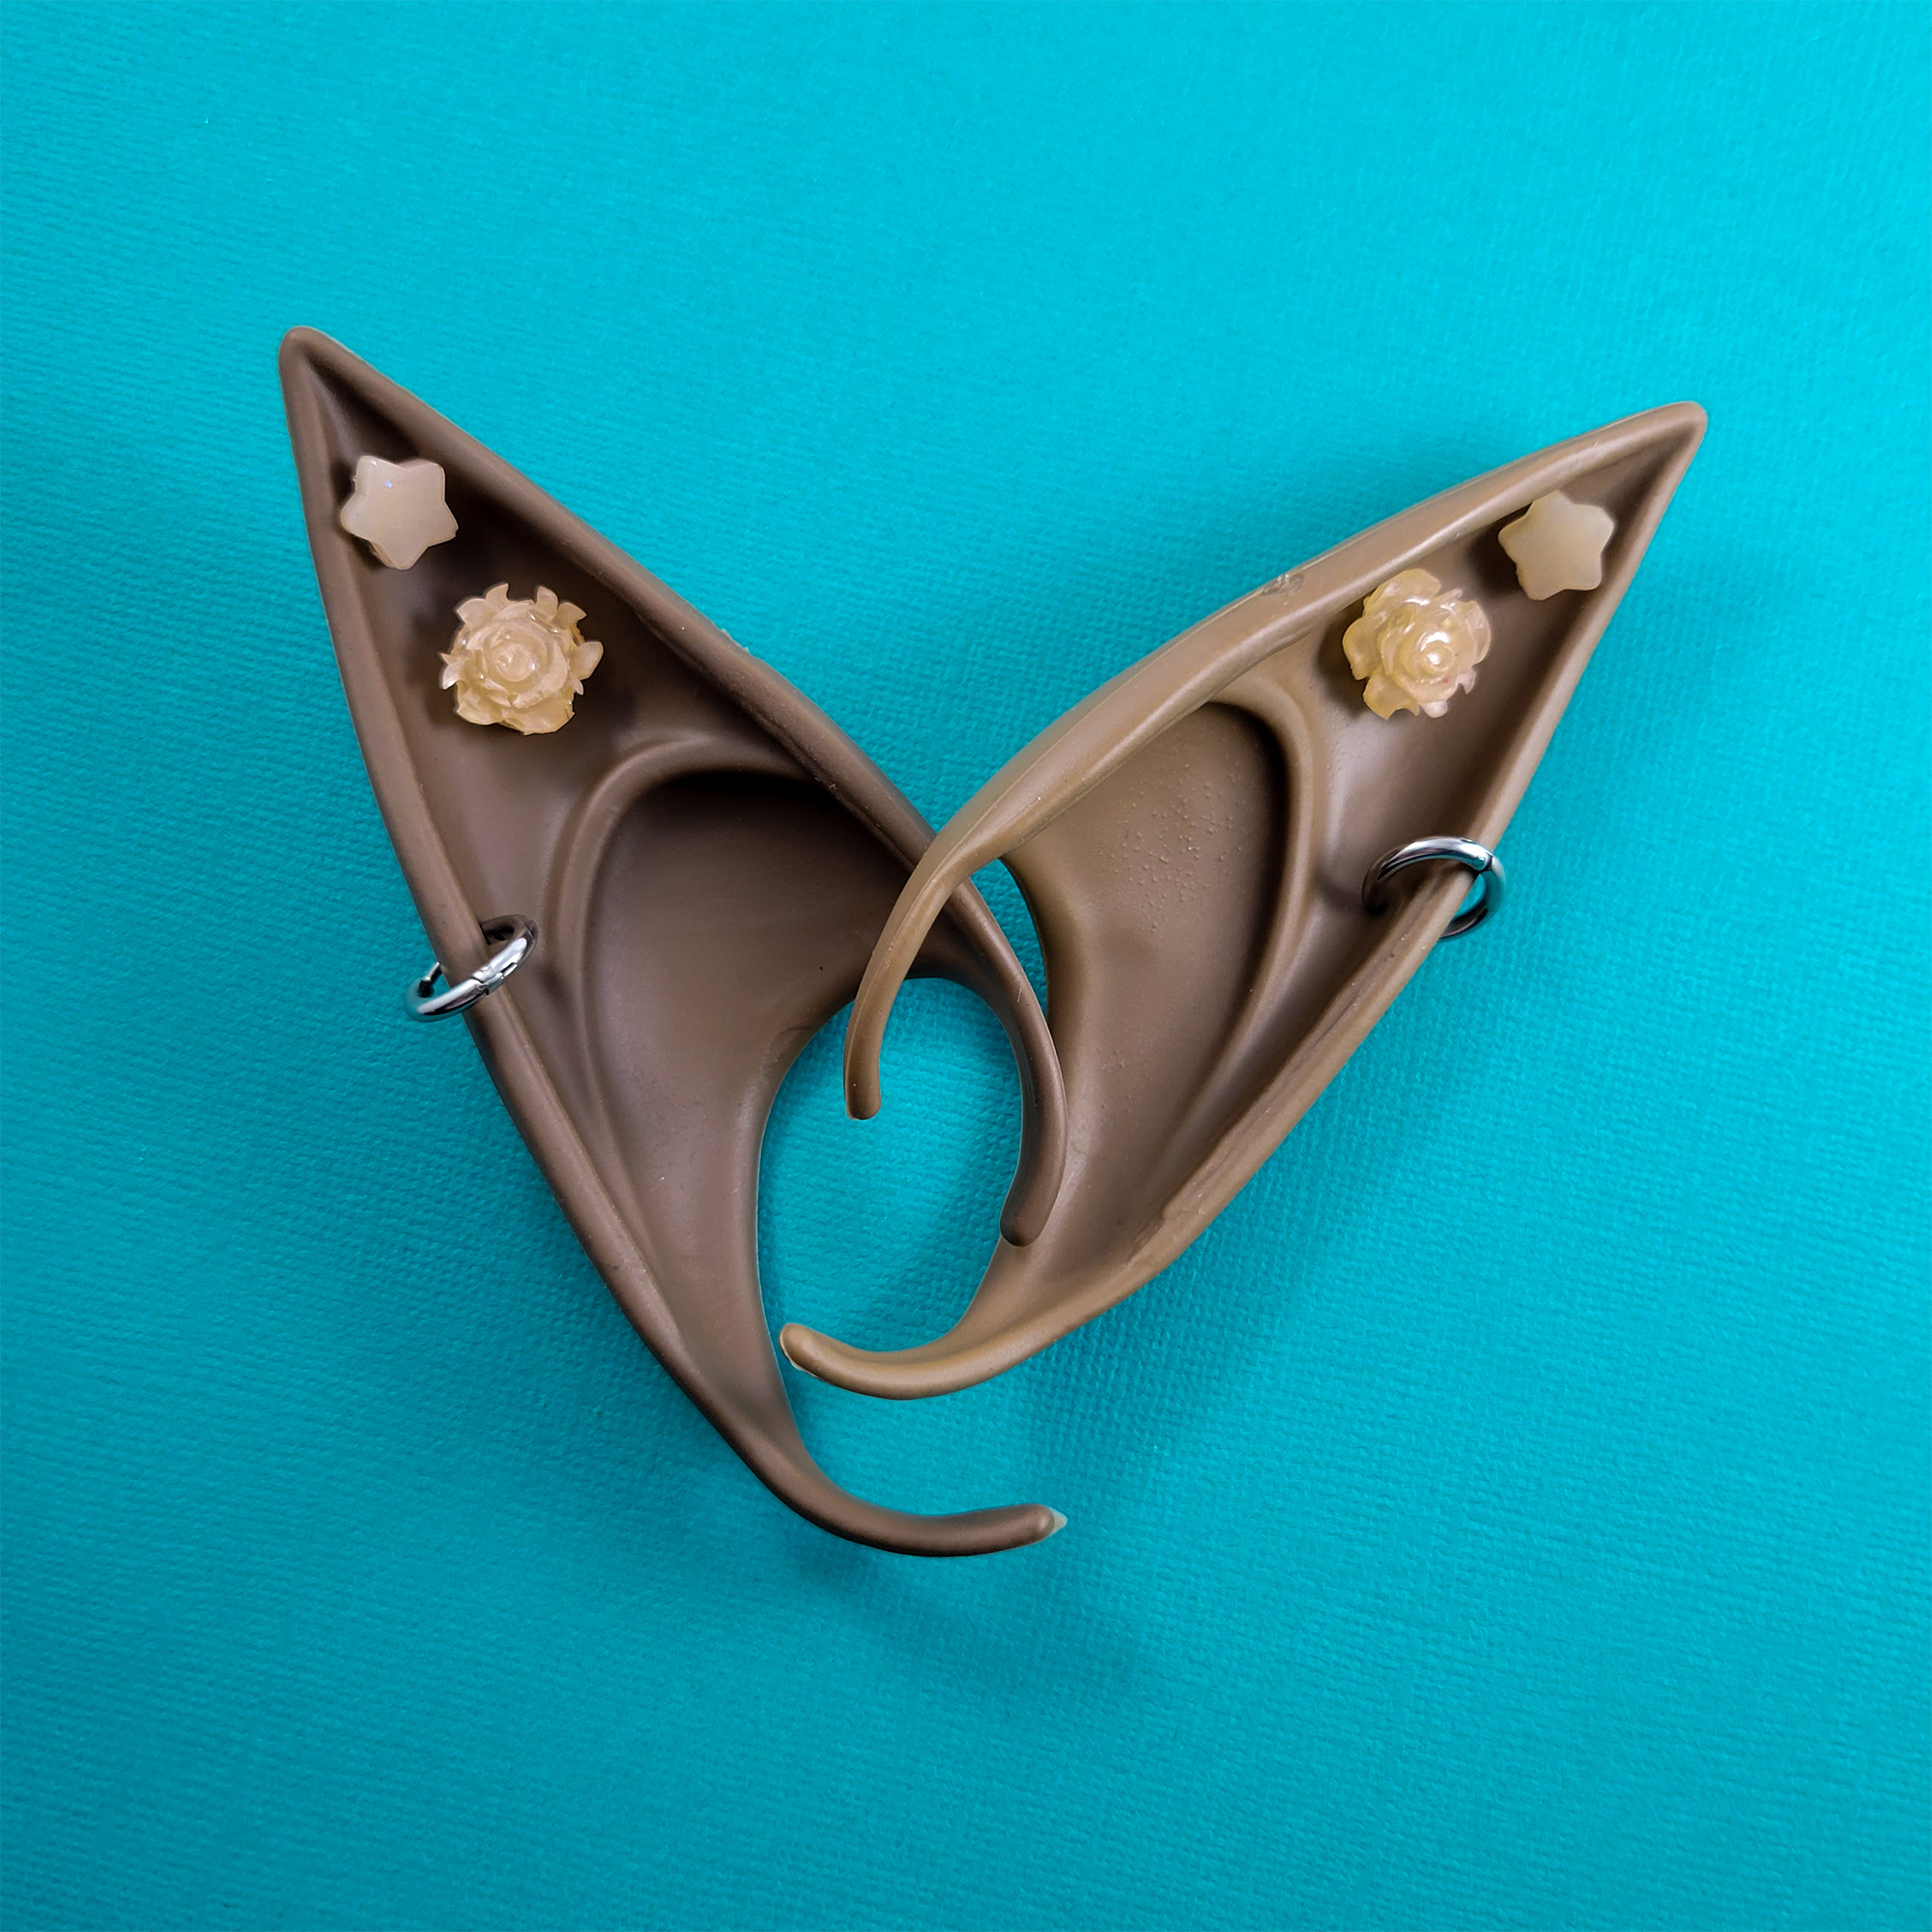 Brown Elf Ears by Wilde Designs